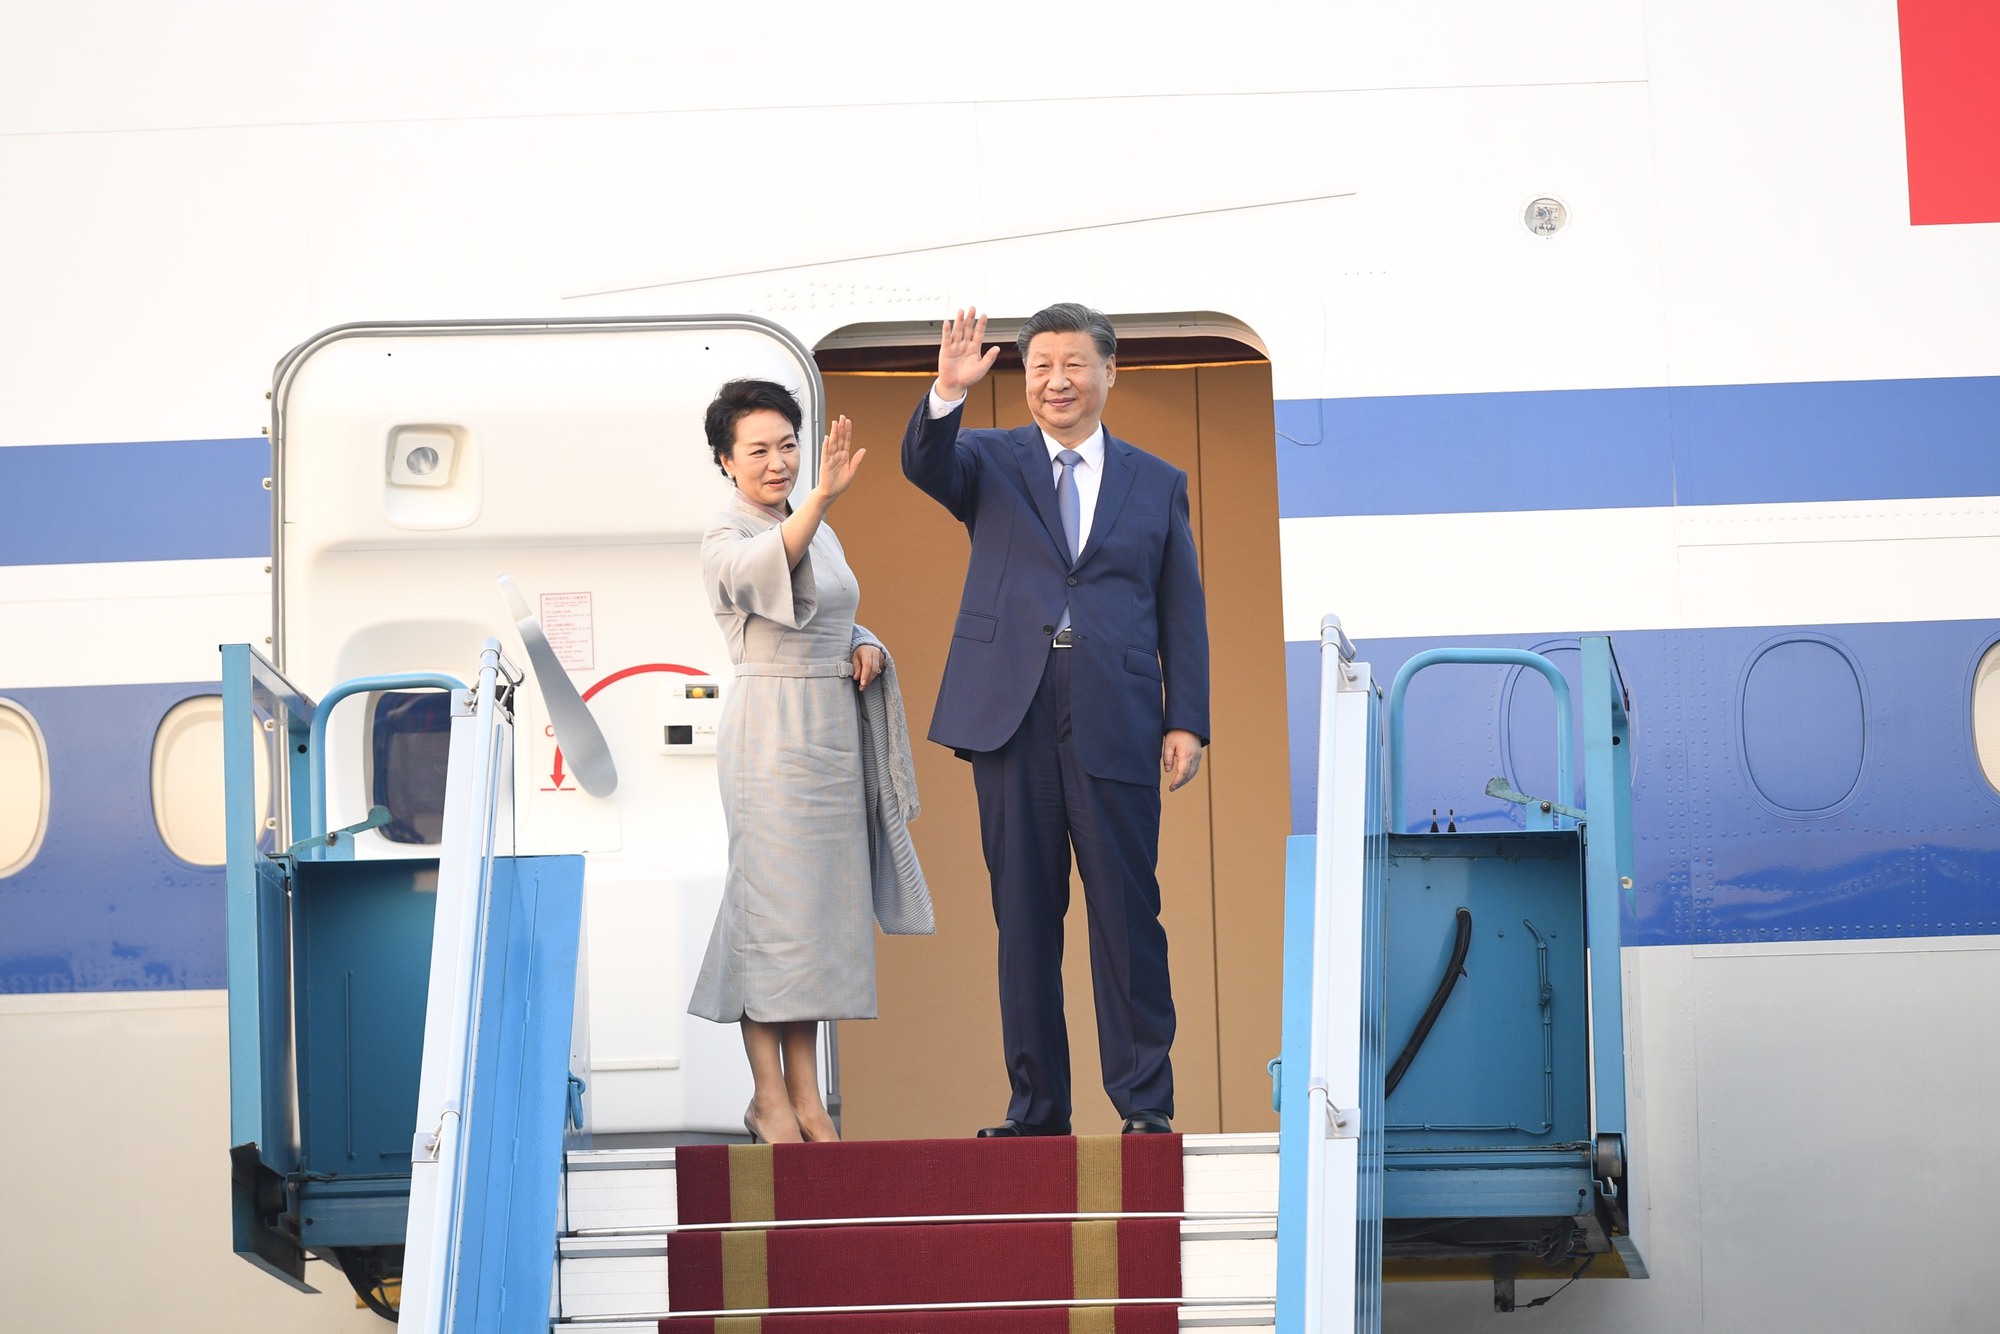 Cận cảnh Tổng bí thư, Chủ tịch Trung Quốc lên chuyên cơ rời Hà Nội - Ảnh 3.